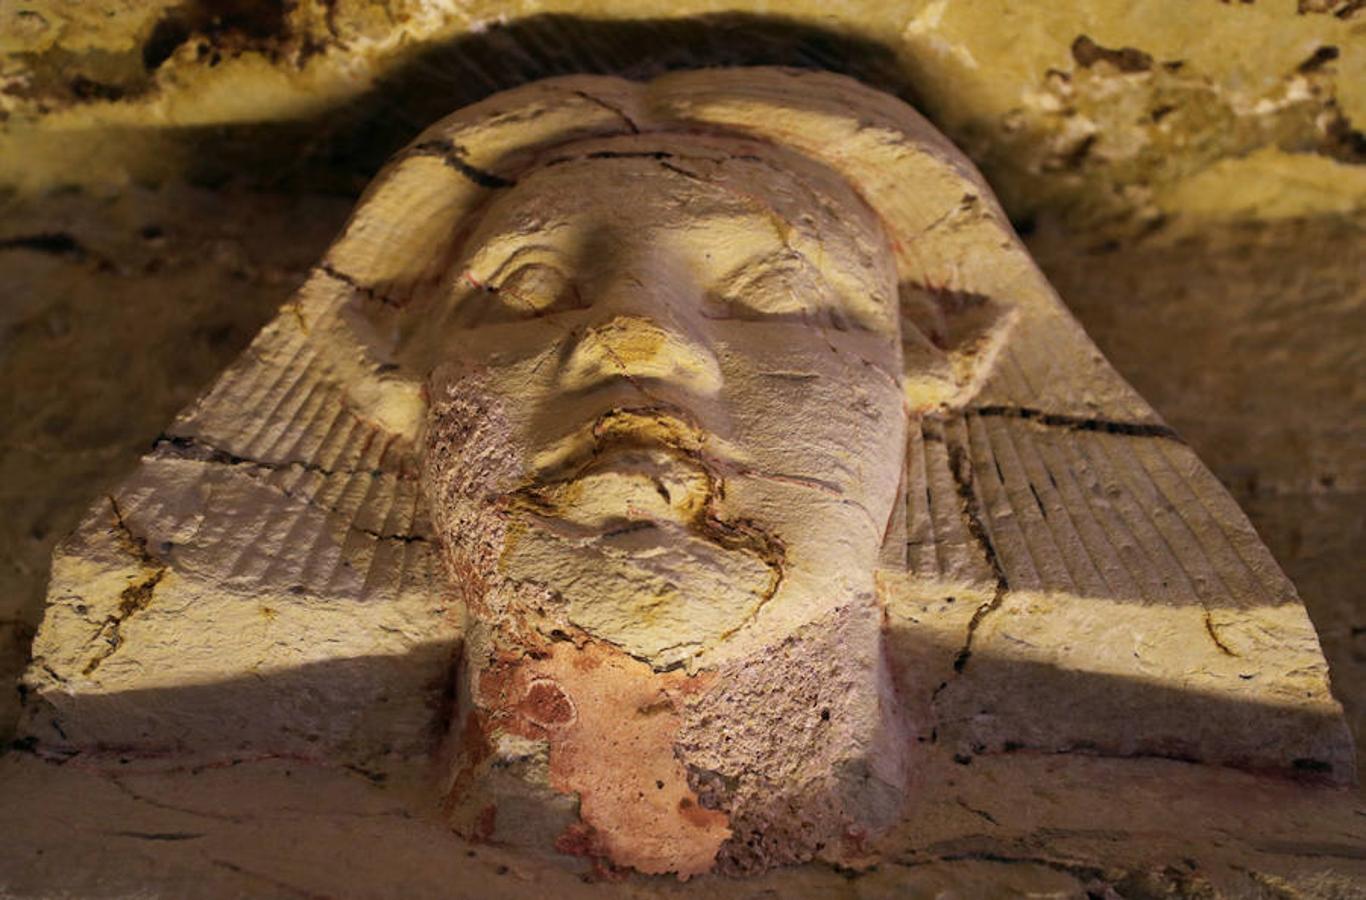 Viaje al interior de la tumba «más bella» descubierta en Egipto en 2018